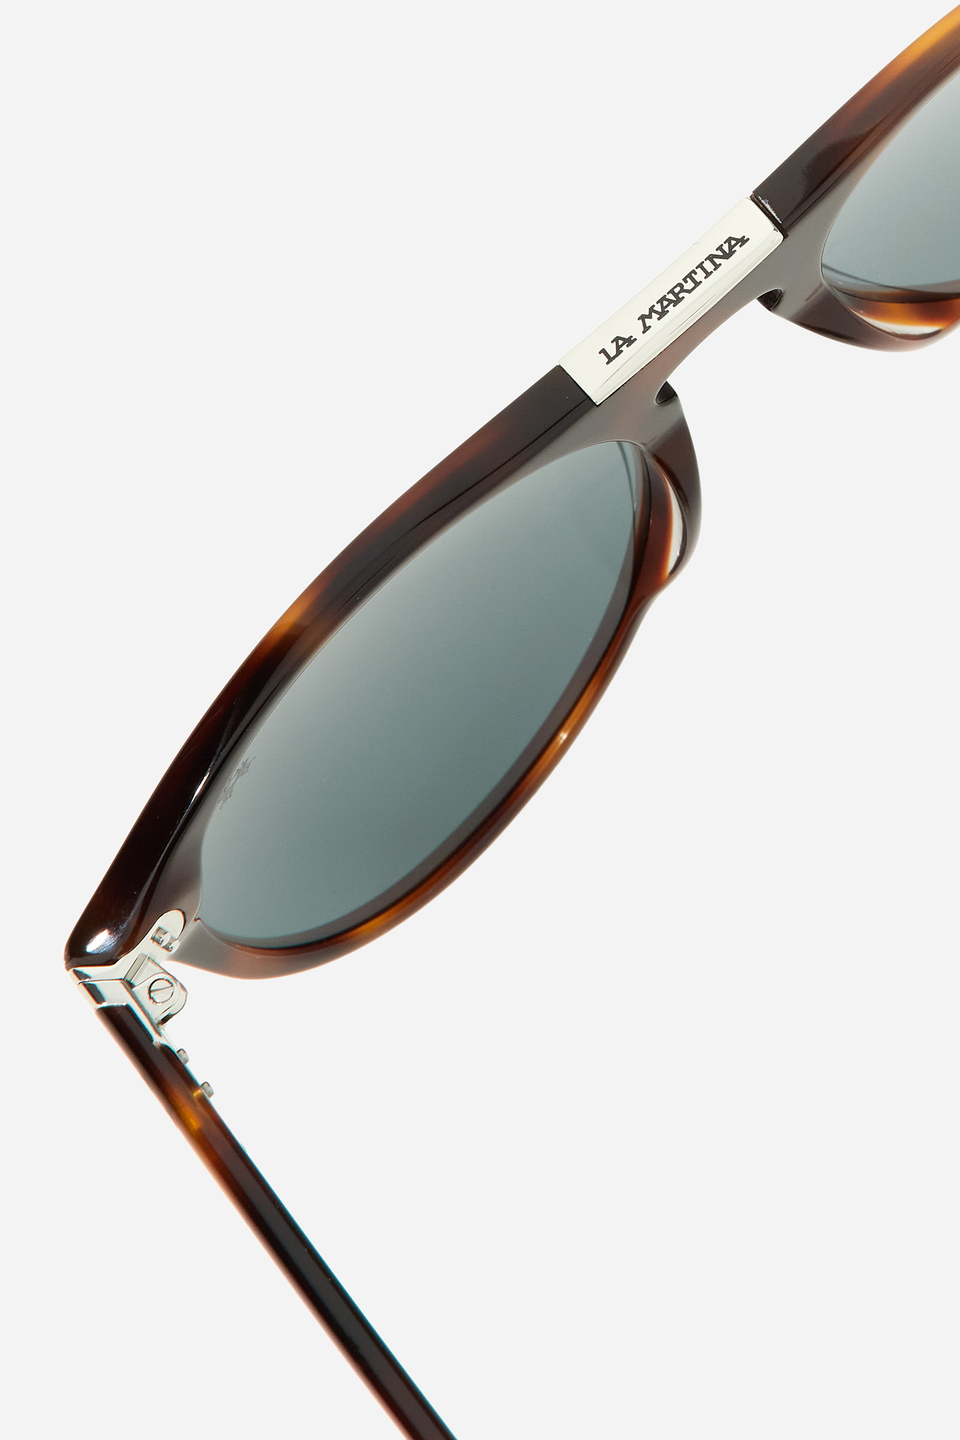 Unisex acetate sunglasses | La Martina - Official Online Shop